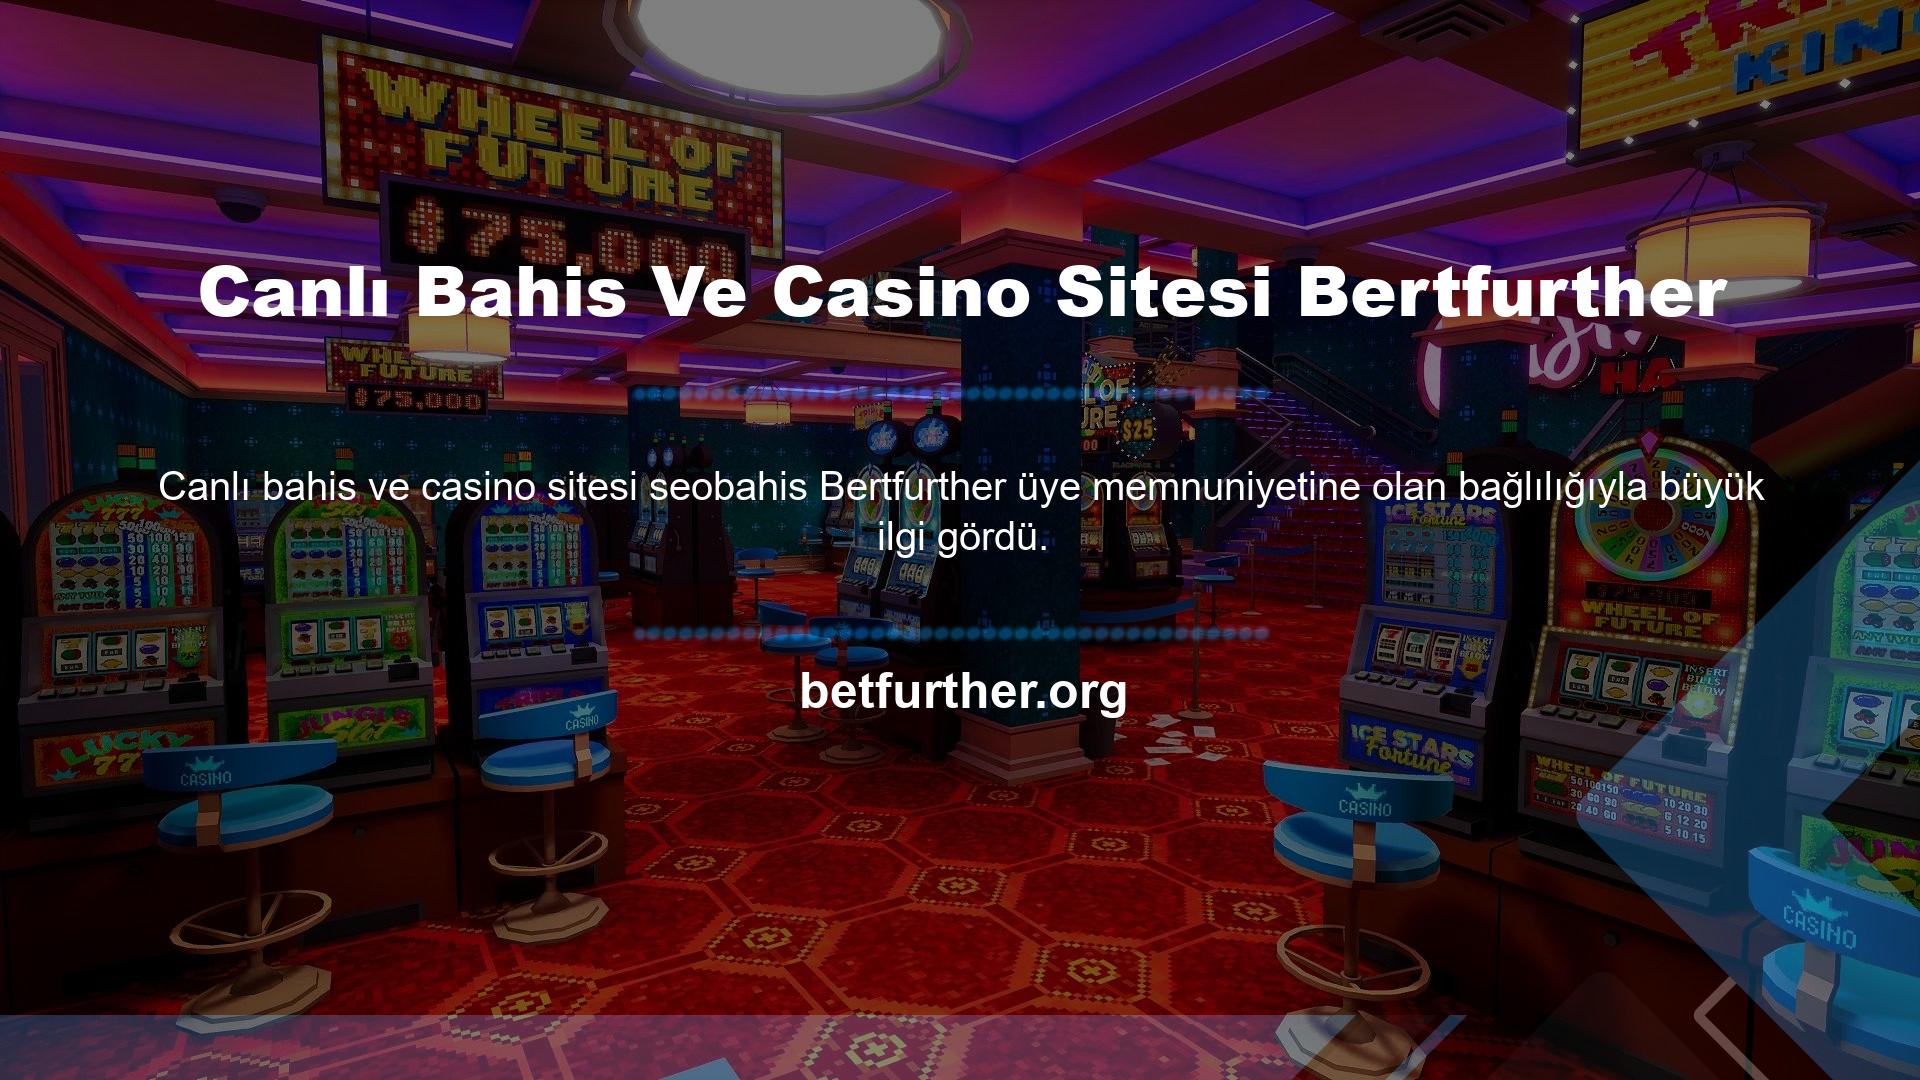 Bertfurther sitesi casino oyunları oynayarak para kazanmak için harika bir yerdir